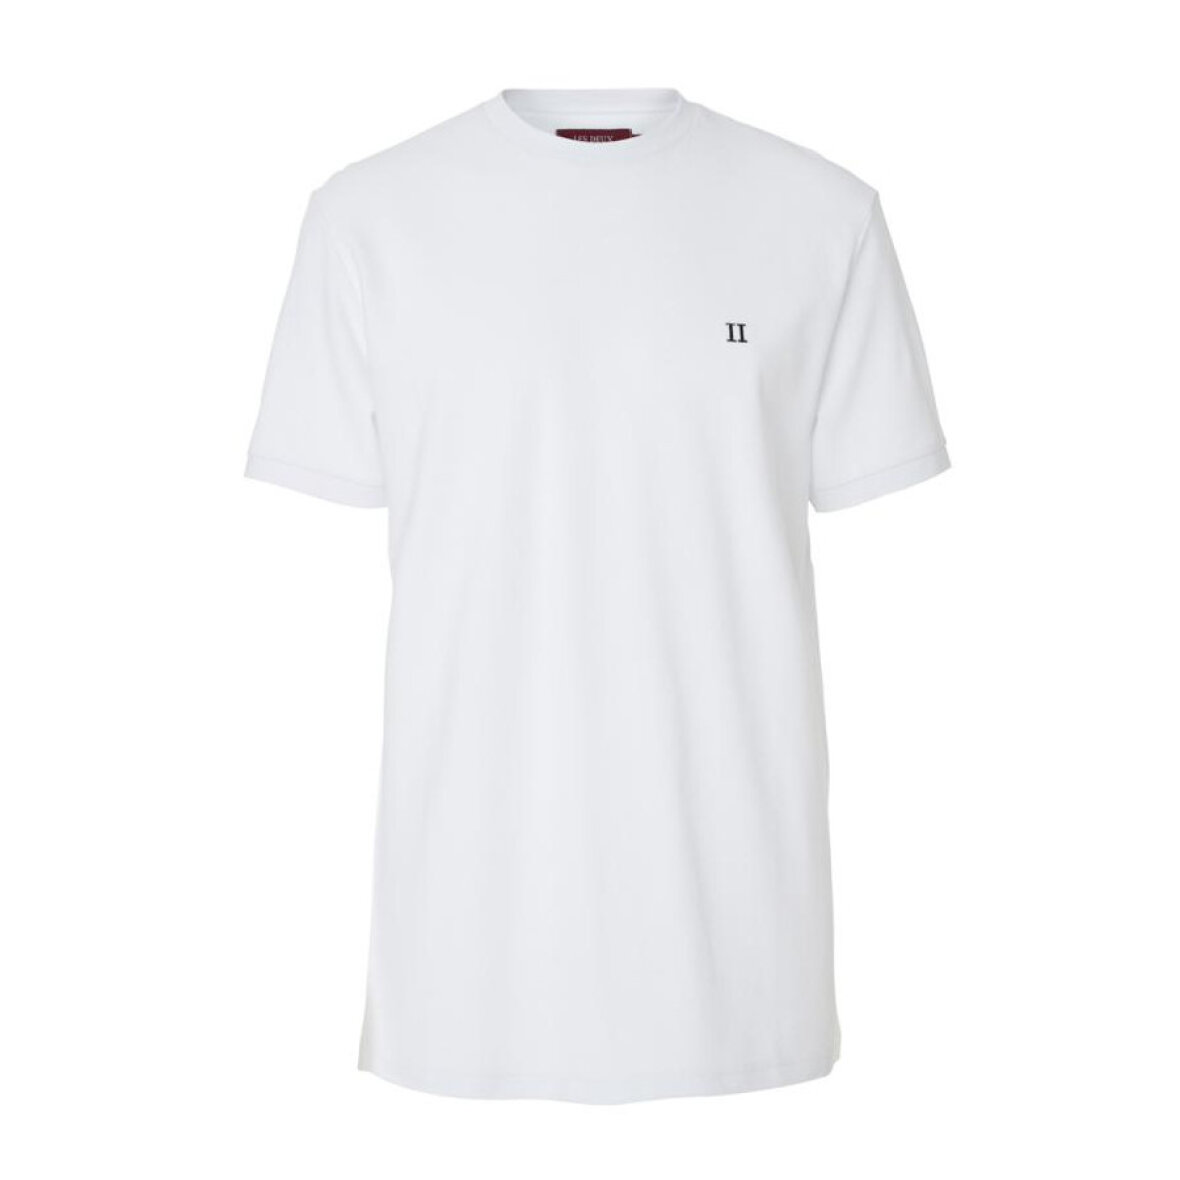 kig ind Rejse investering les Deux t-shirt pique white - Shop online nu